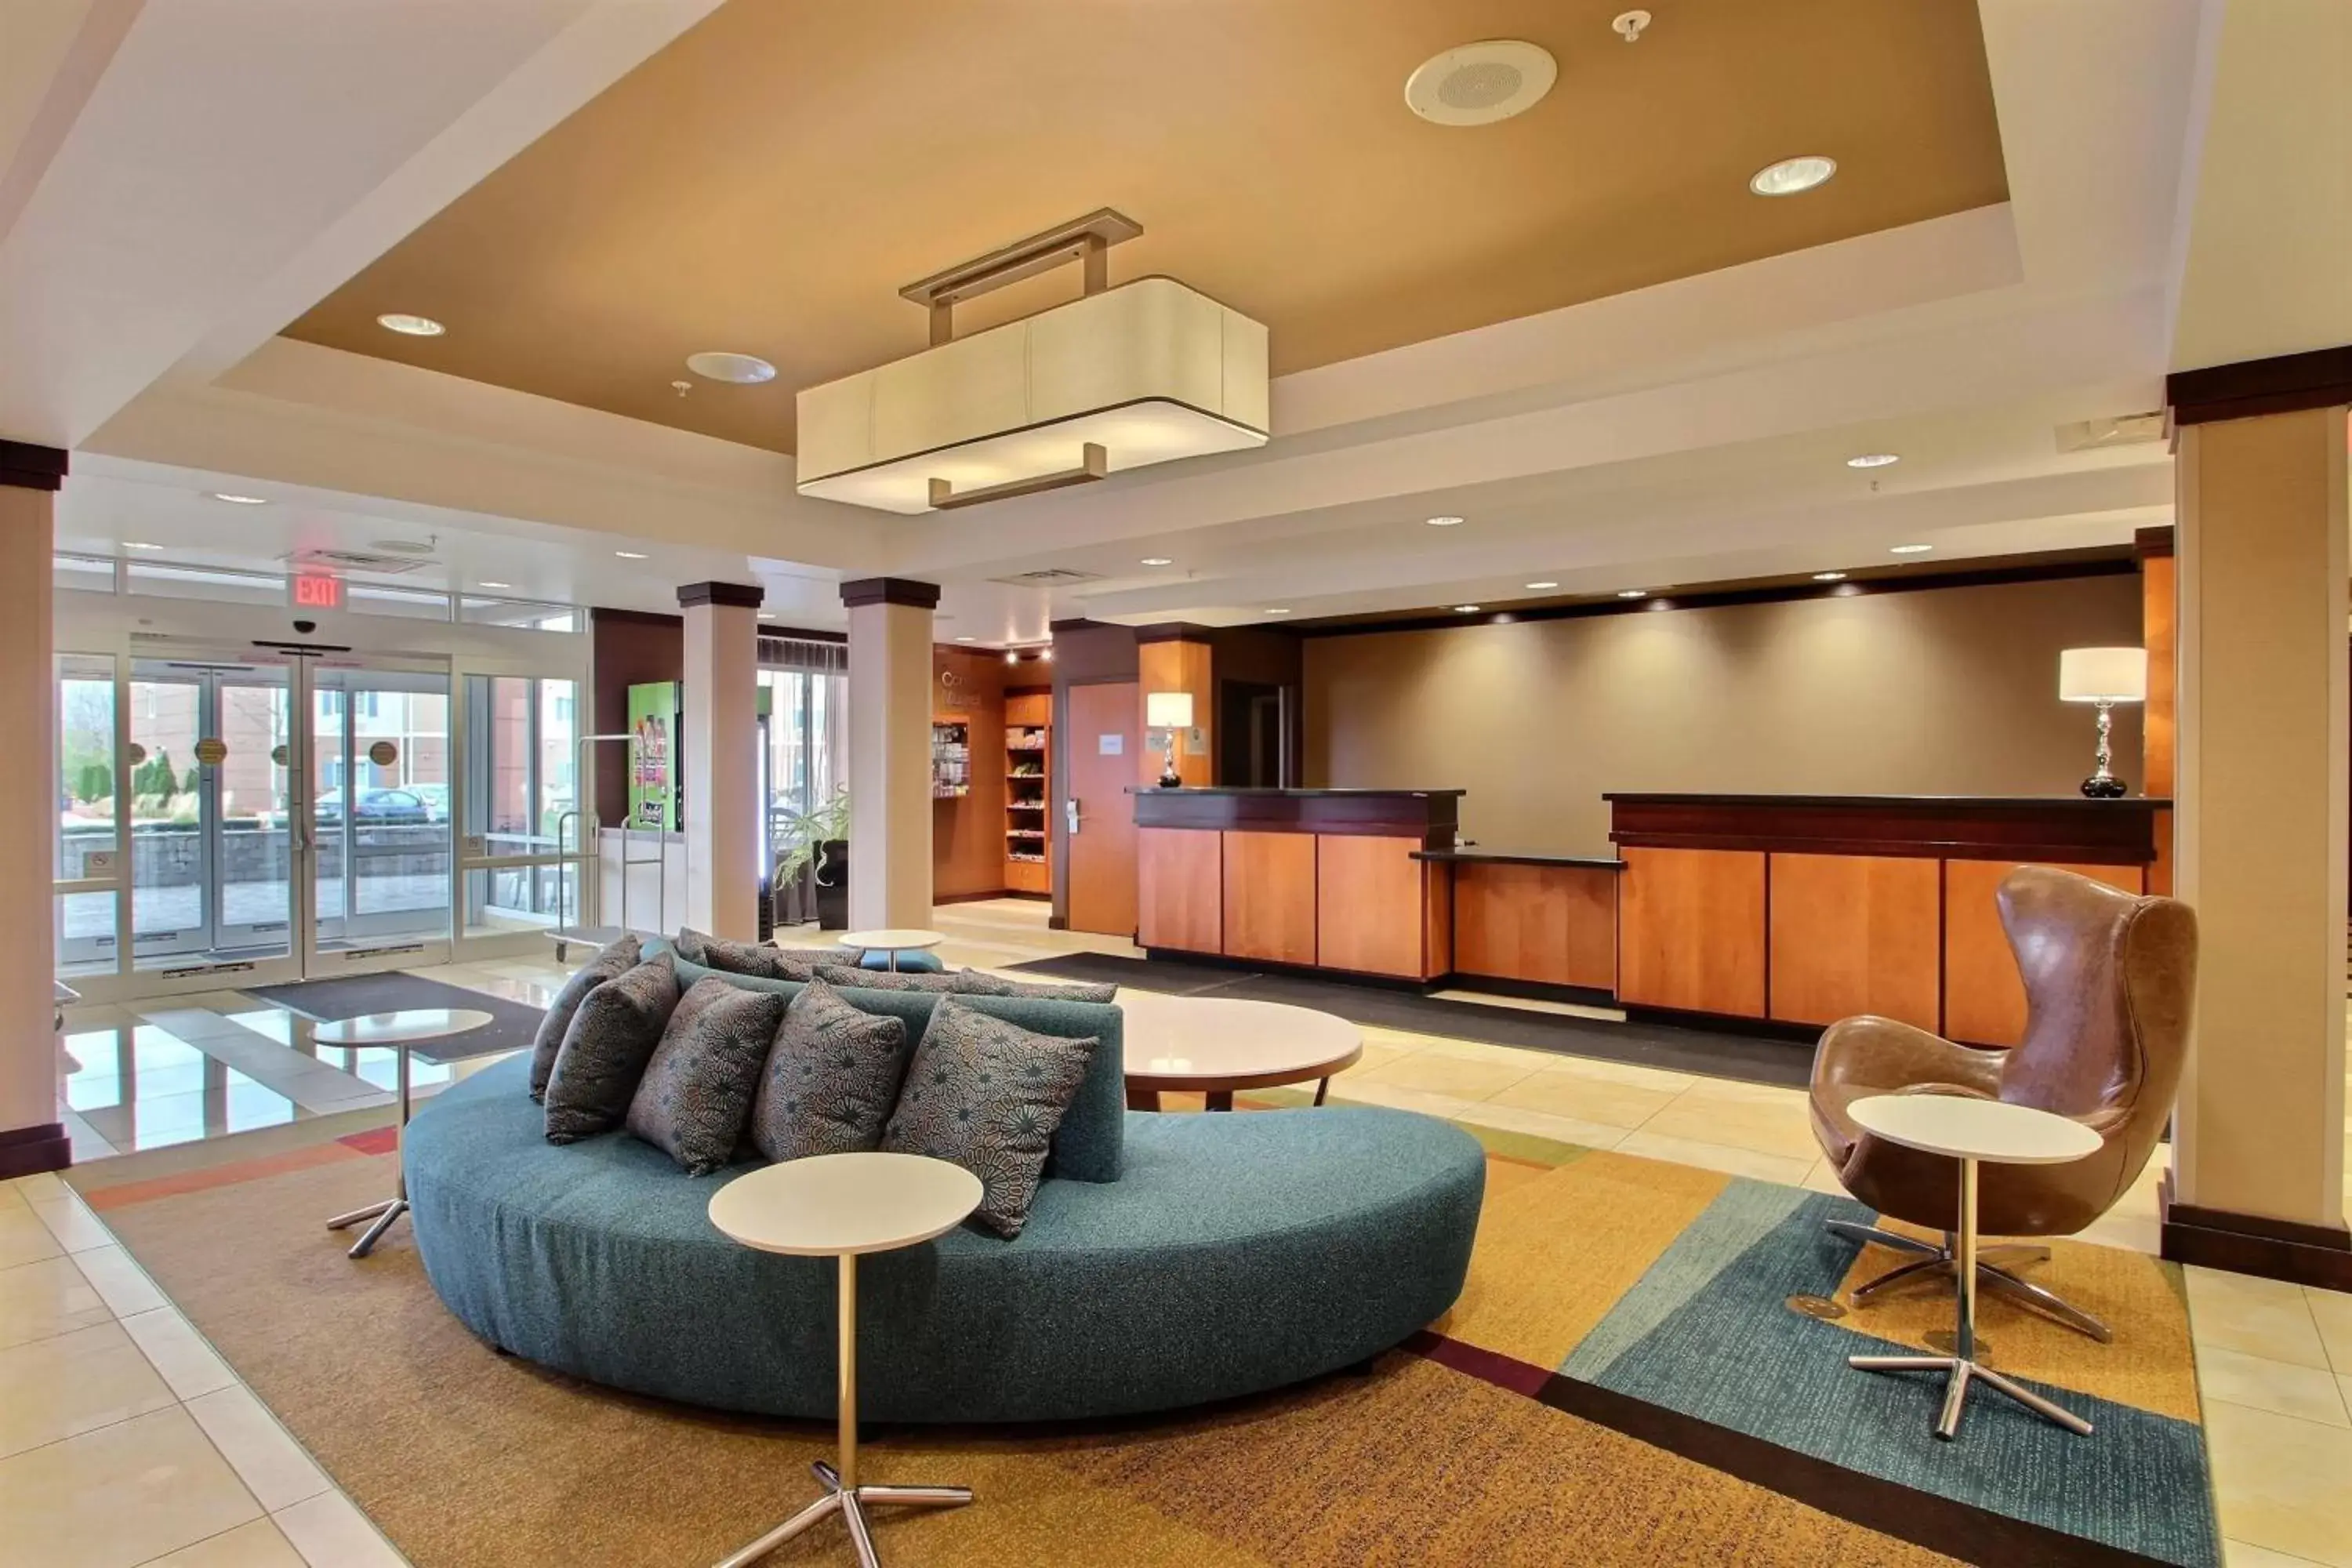 Lobby or reception, Lobby/Reception in Fairfield Inn & Suites by Marriott Milwaukee Airport